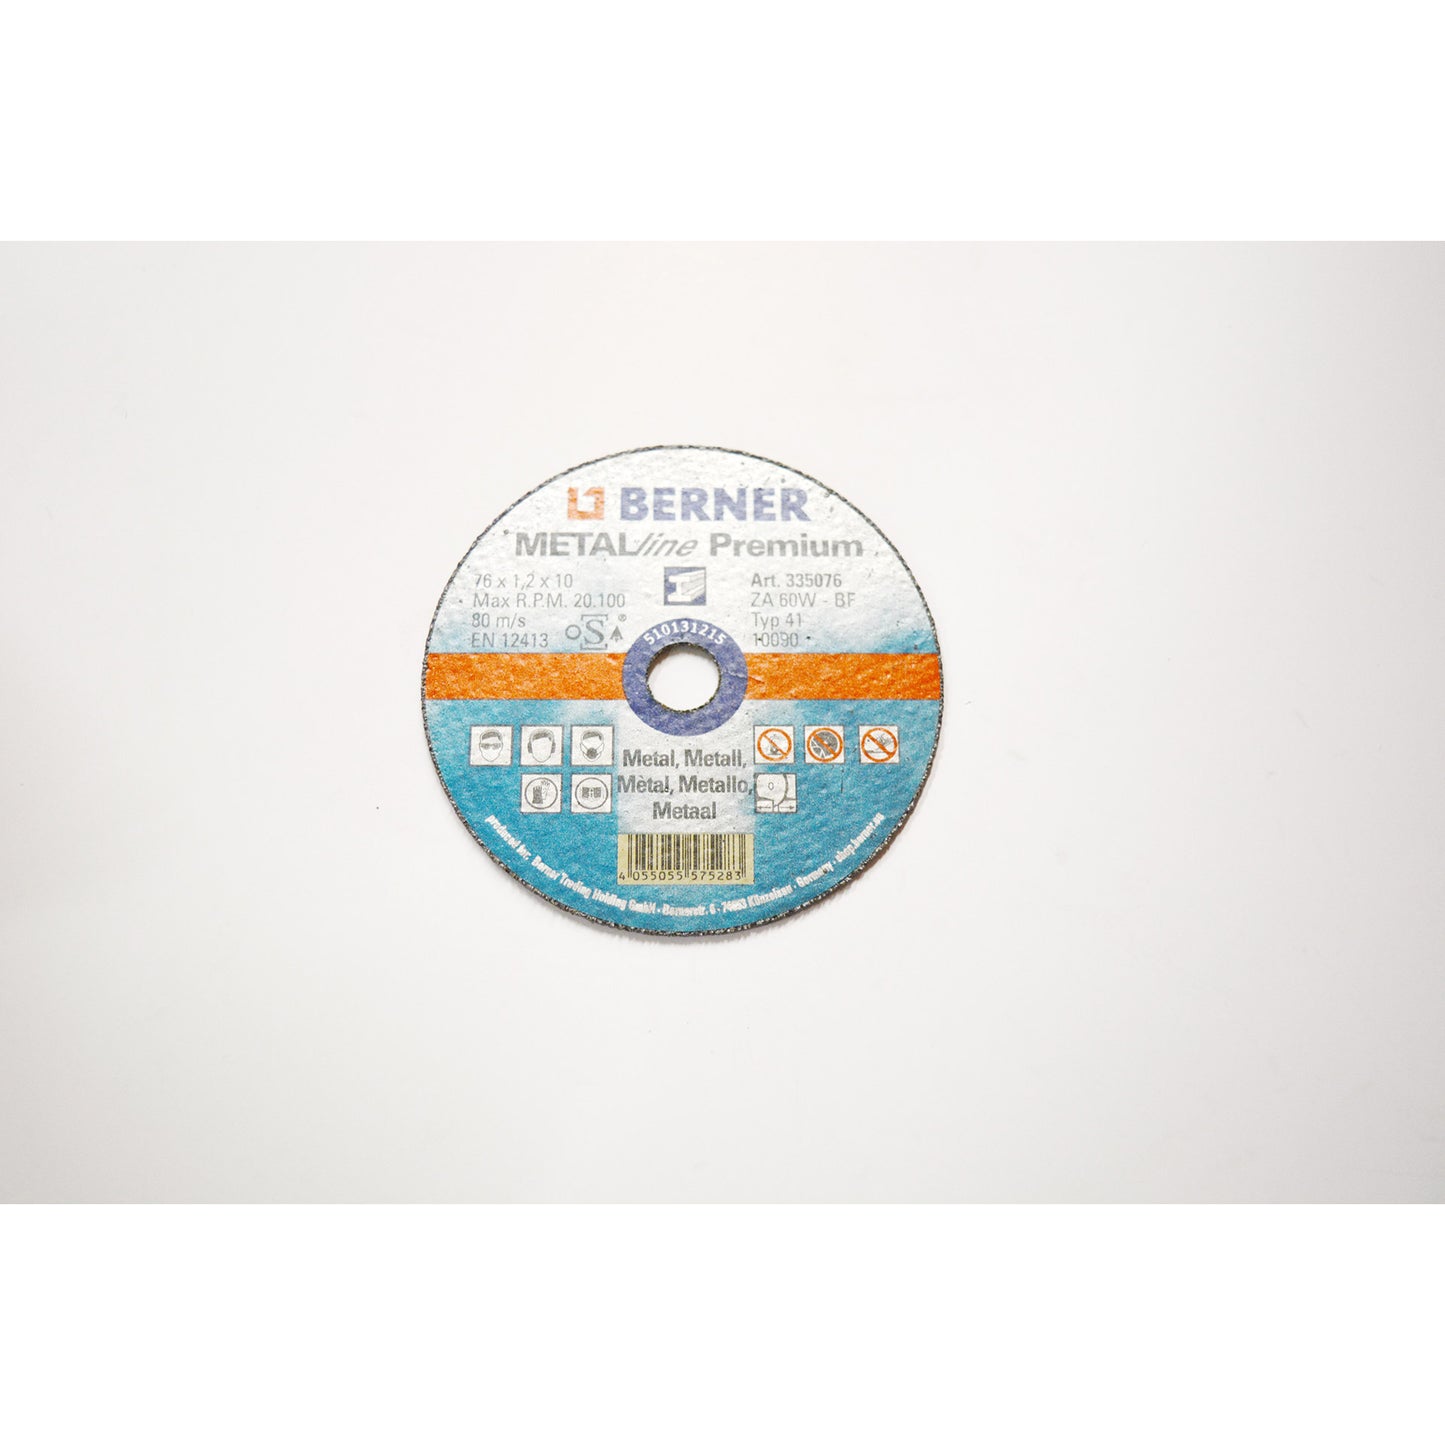 Berner Door Dems Metal Metalline Premium 76mm (25st)